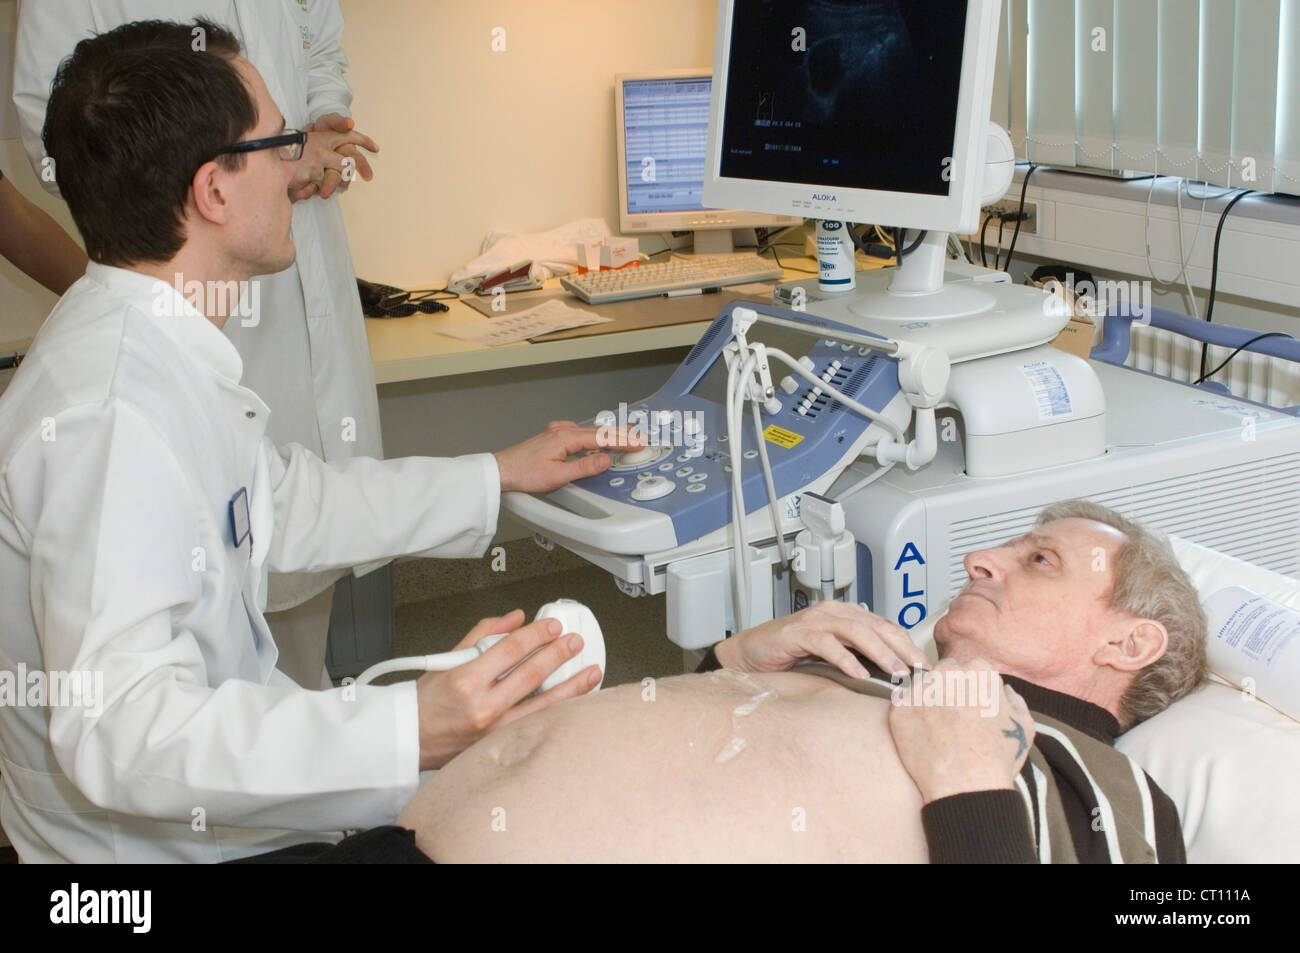 Un hombre que está pasando por un procedimiento para detectar una sospecha de hernia. Foto de stock